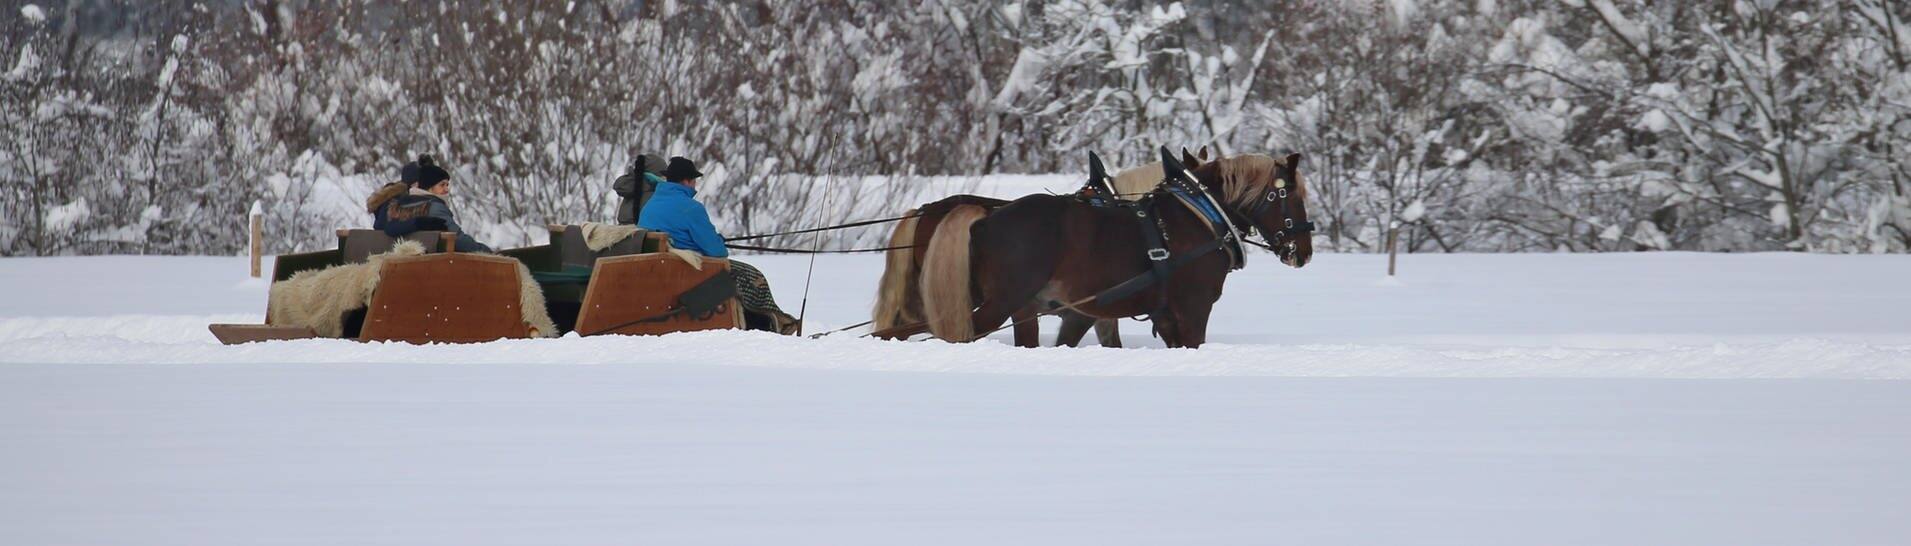 Symbolbild: Ausflügler lassen sich auf einem Pferdeschlitten durch die winterliche Landschaft ziehen.  (Foto: dpa Bildfunk, picture alliance/dpa | Karl-Josef Hildenbrand)